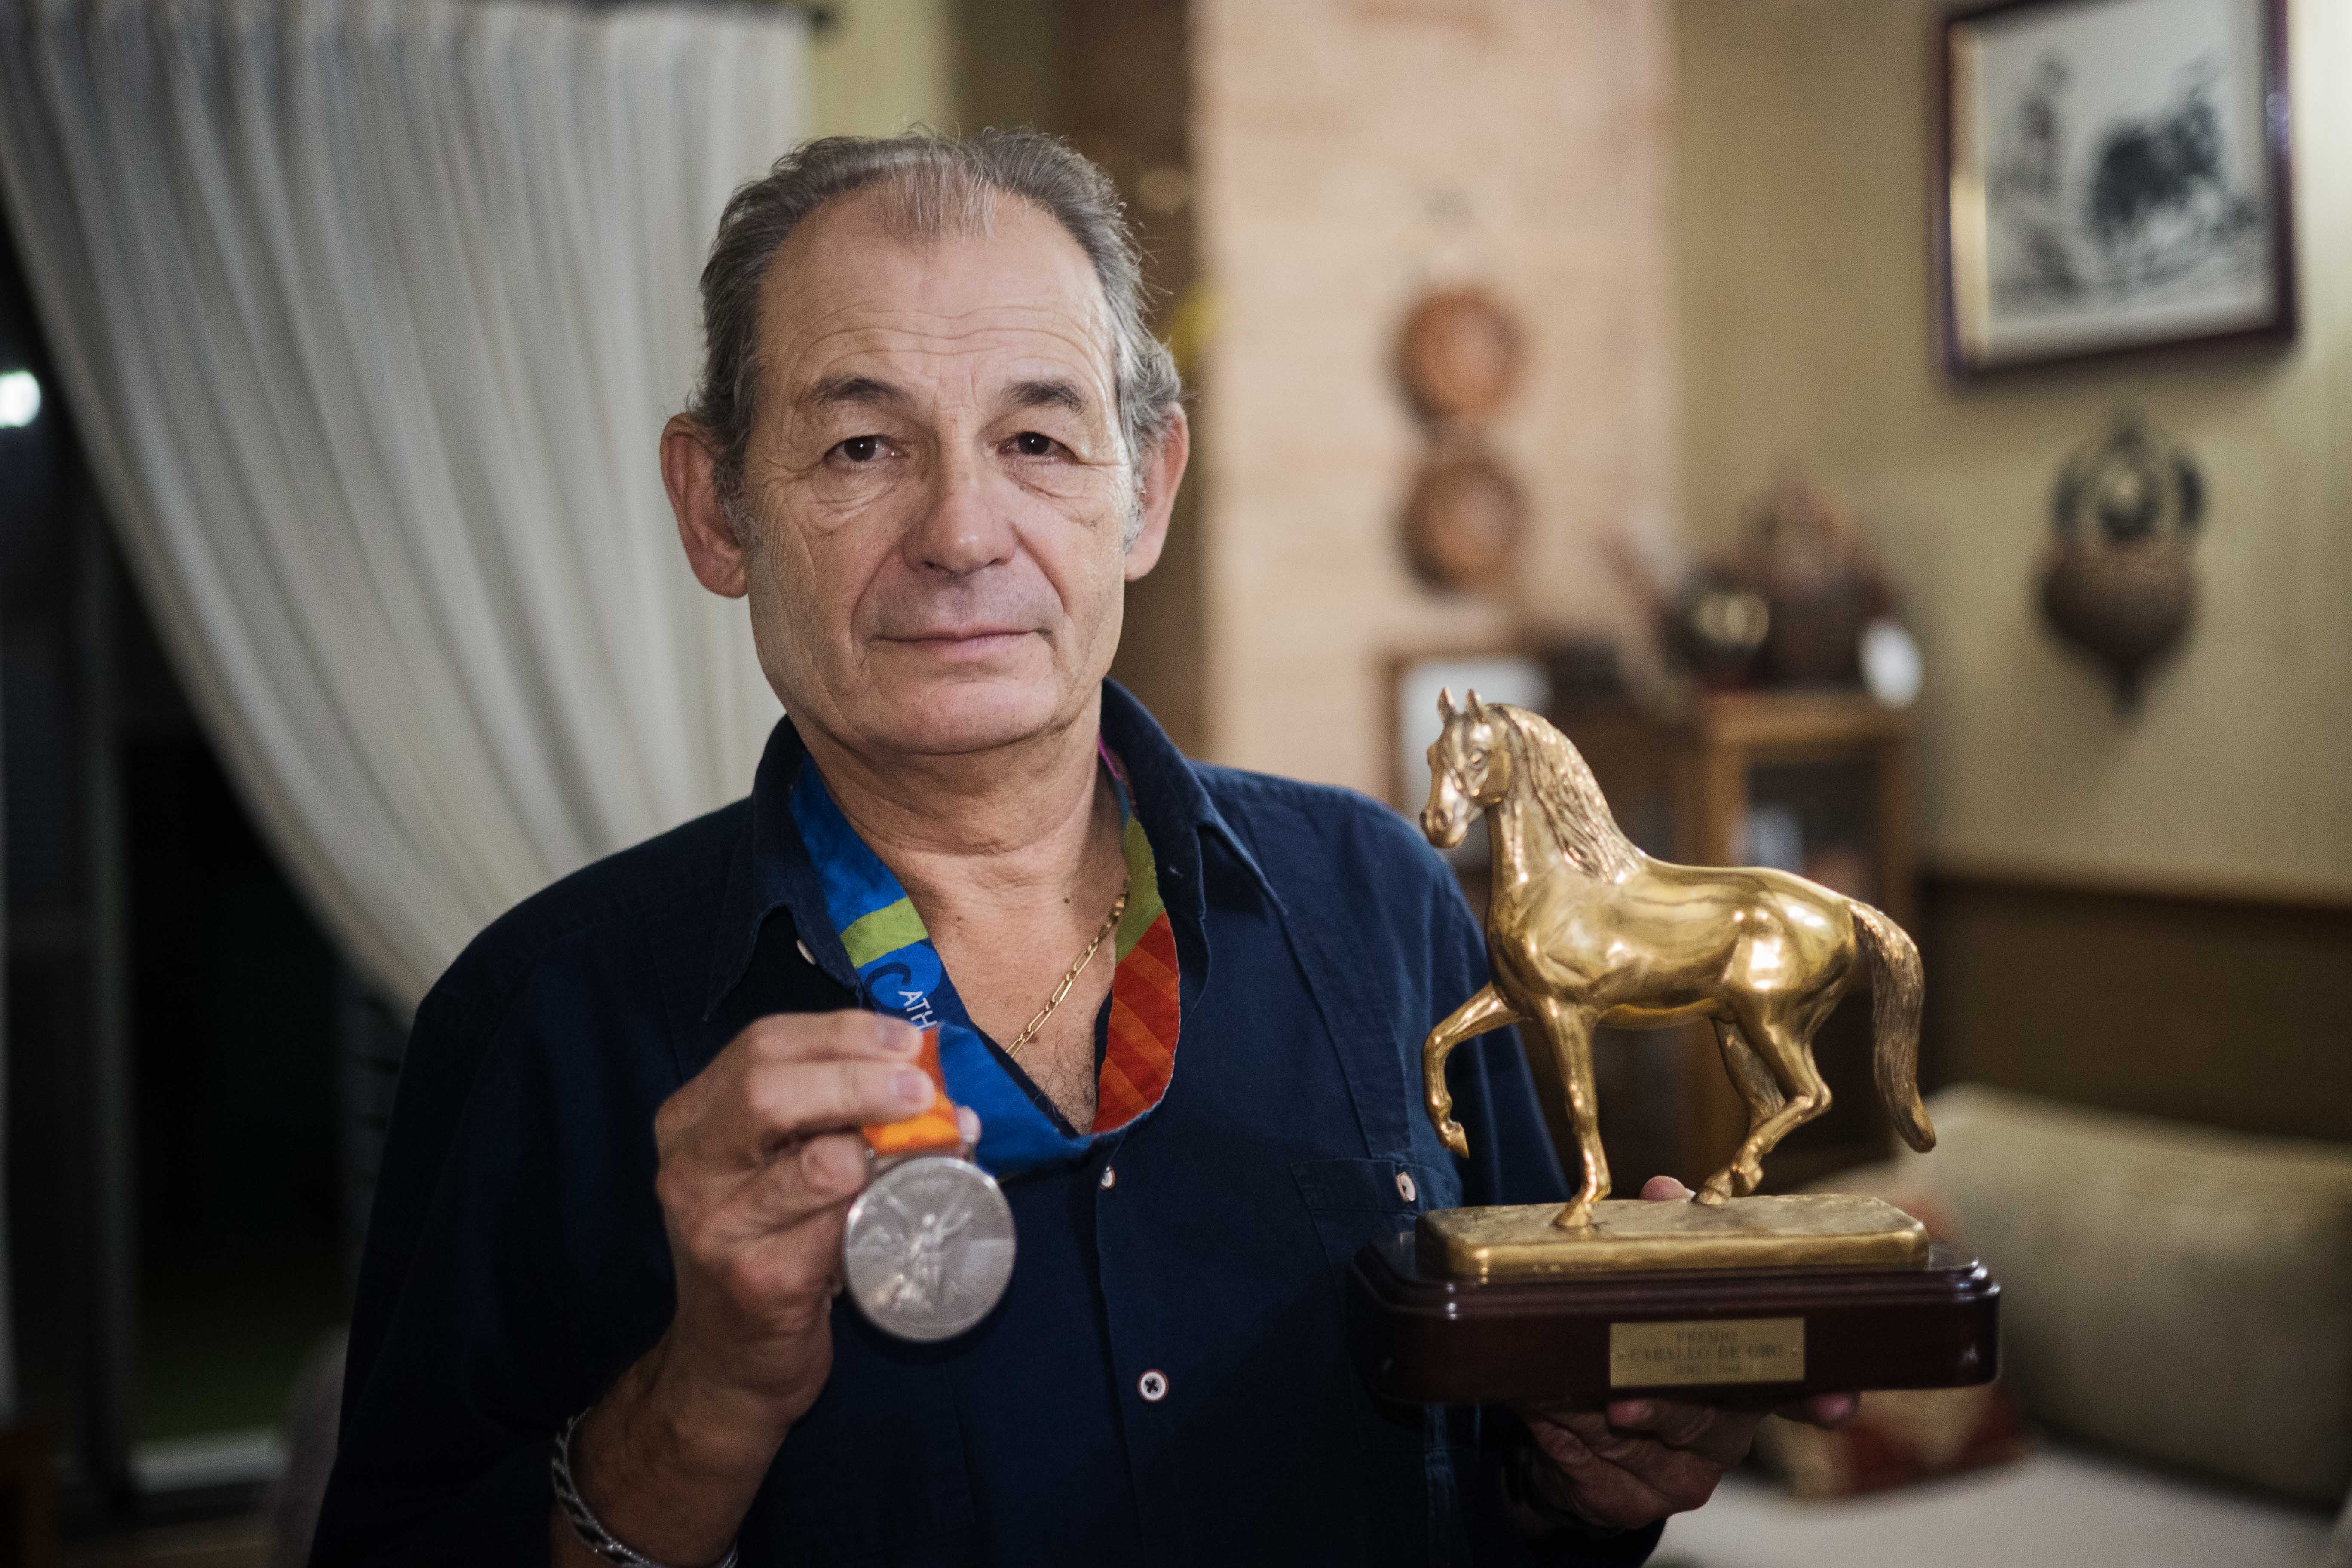 Rafael Soto con el Caballo de Oro y la medalla conseguida en las olimpiadas de Atenas.